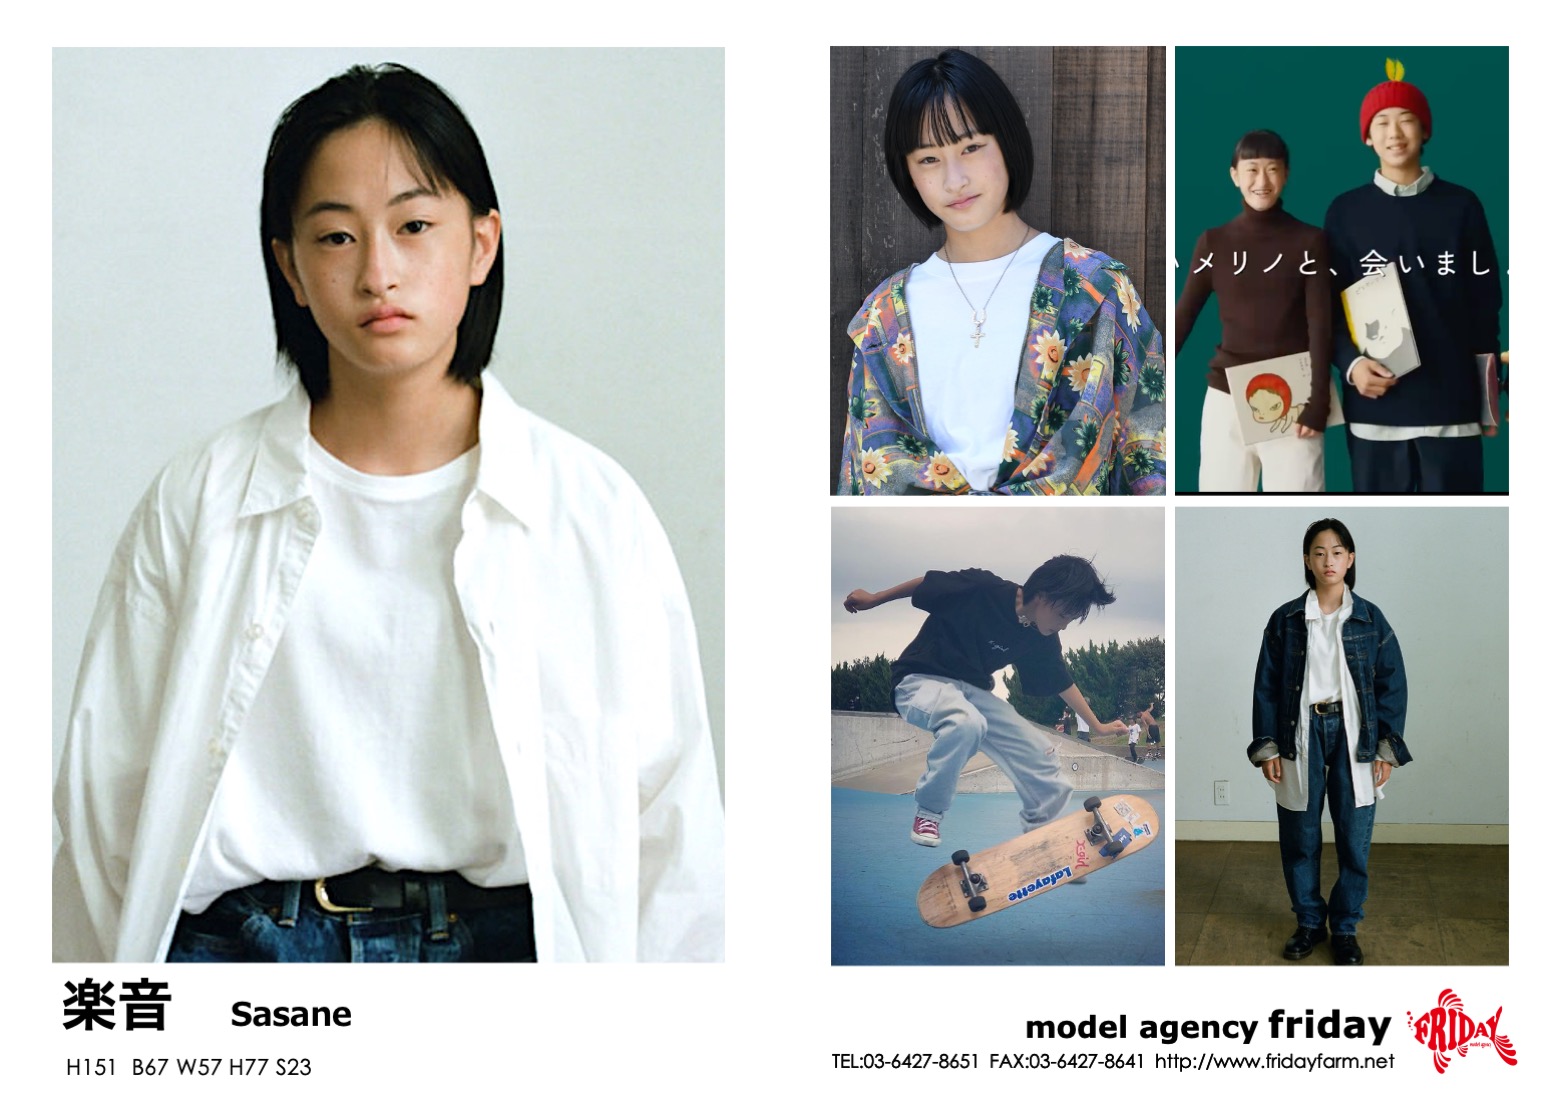 楽音 - Sasane | model agency friday